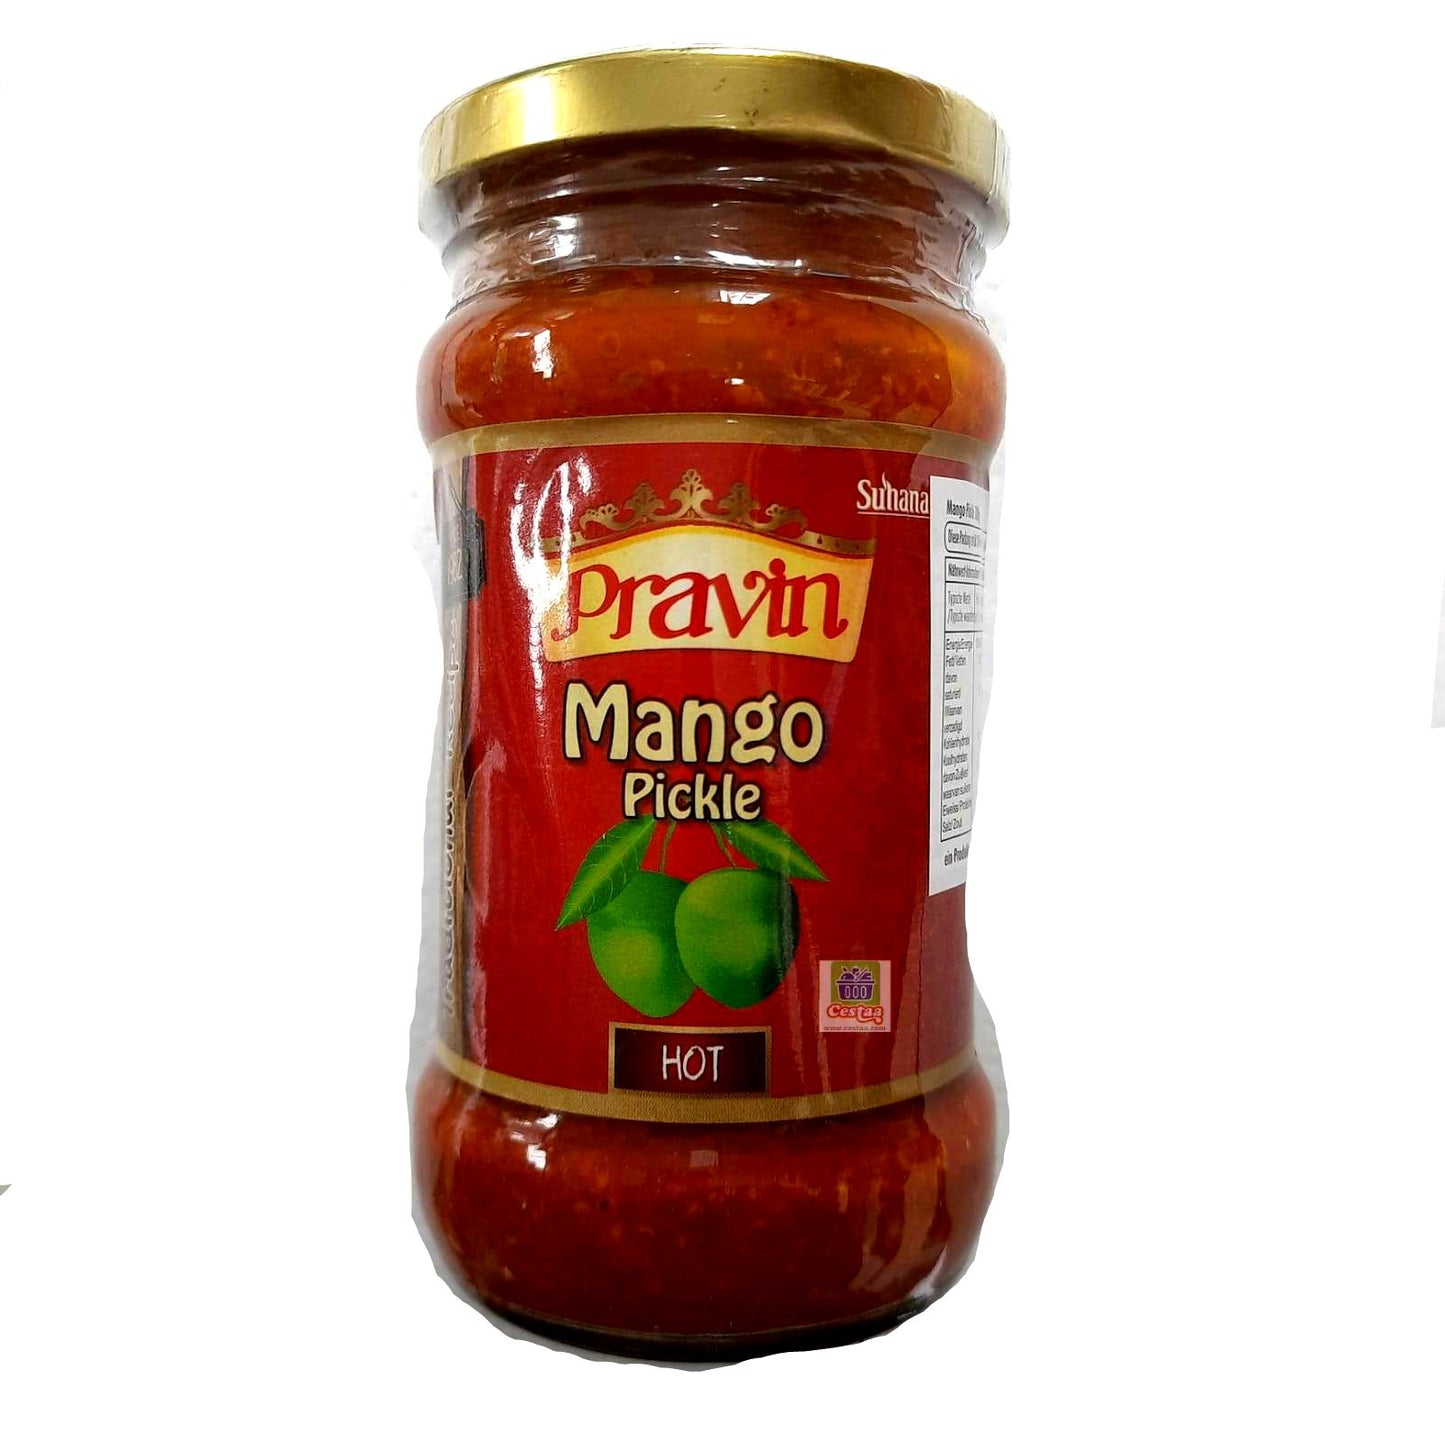 Pravin Mango Pickle 300g - Cestaa Retail